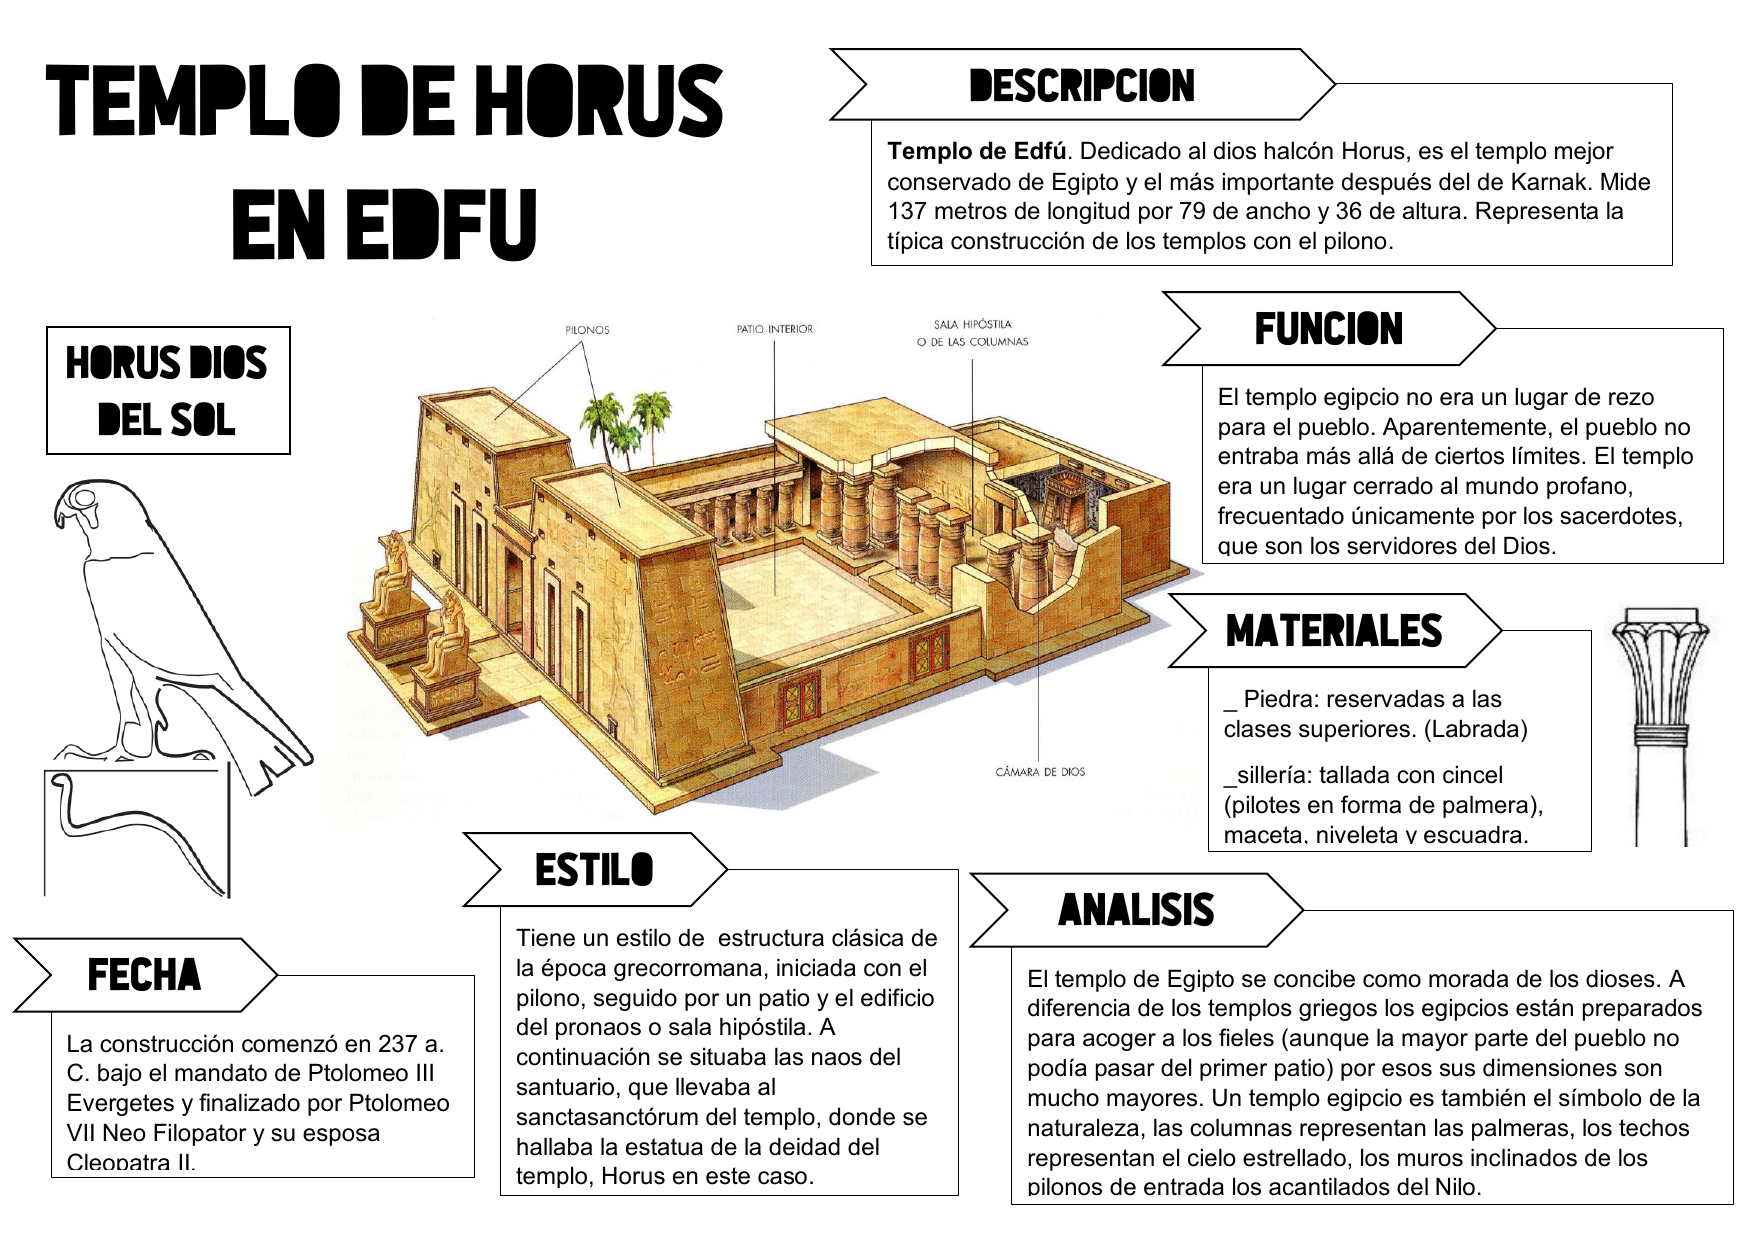 El templo de Edfu